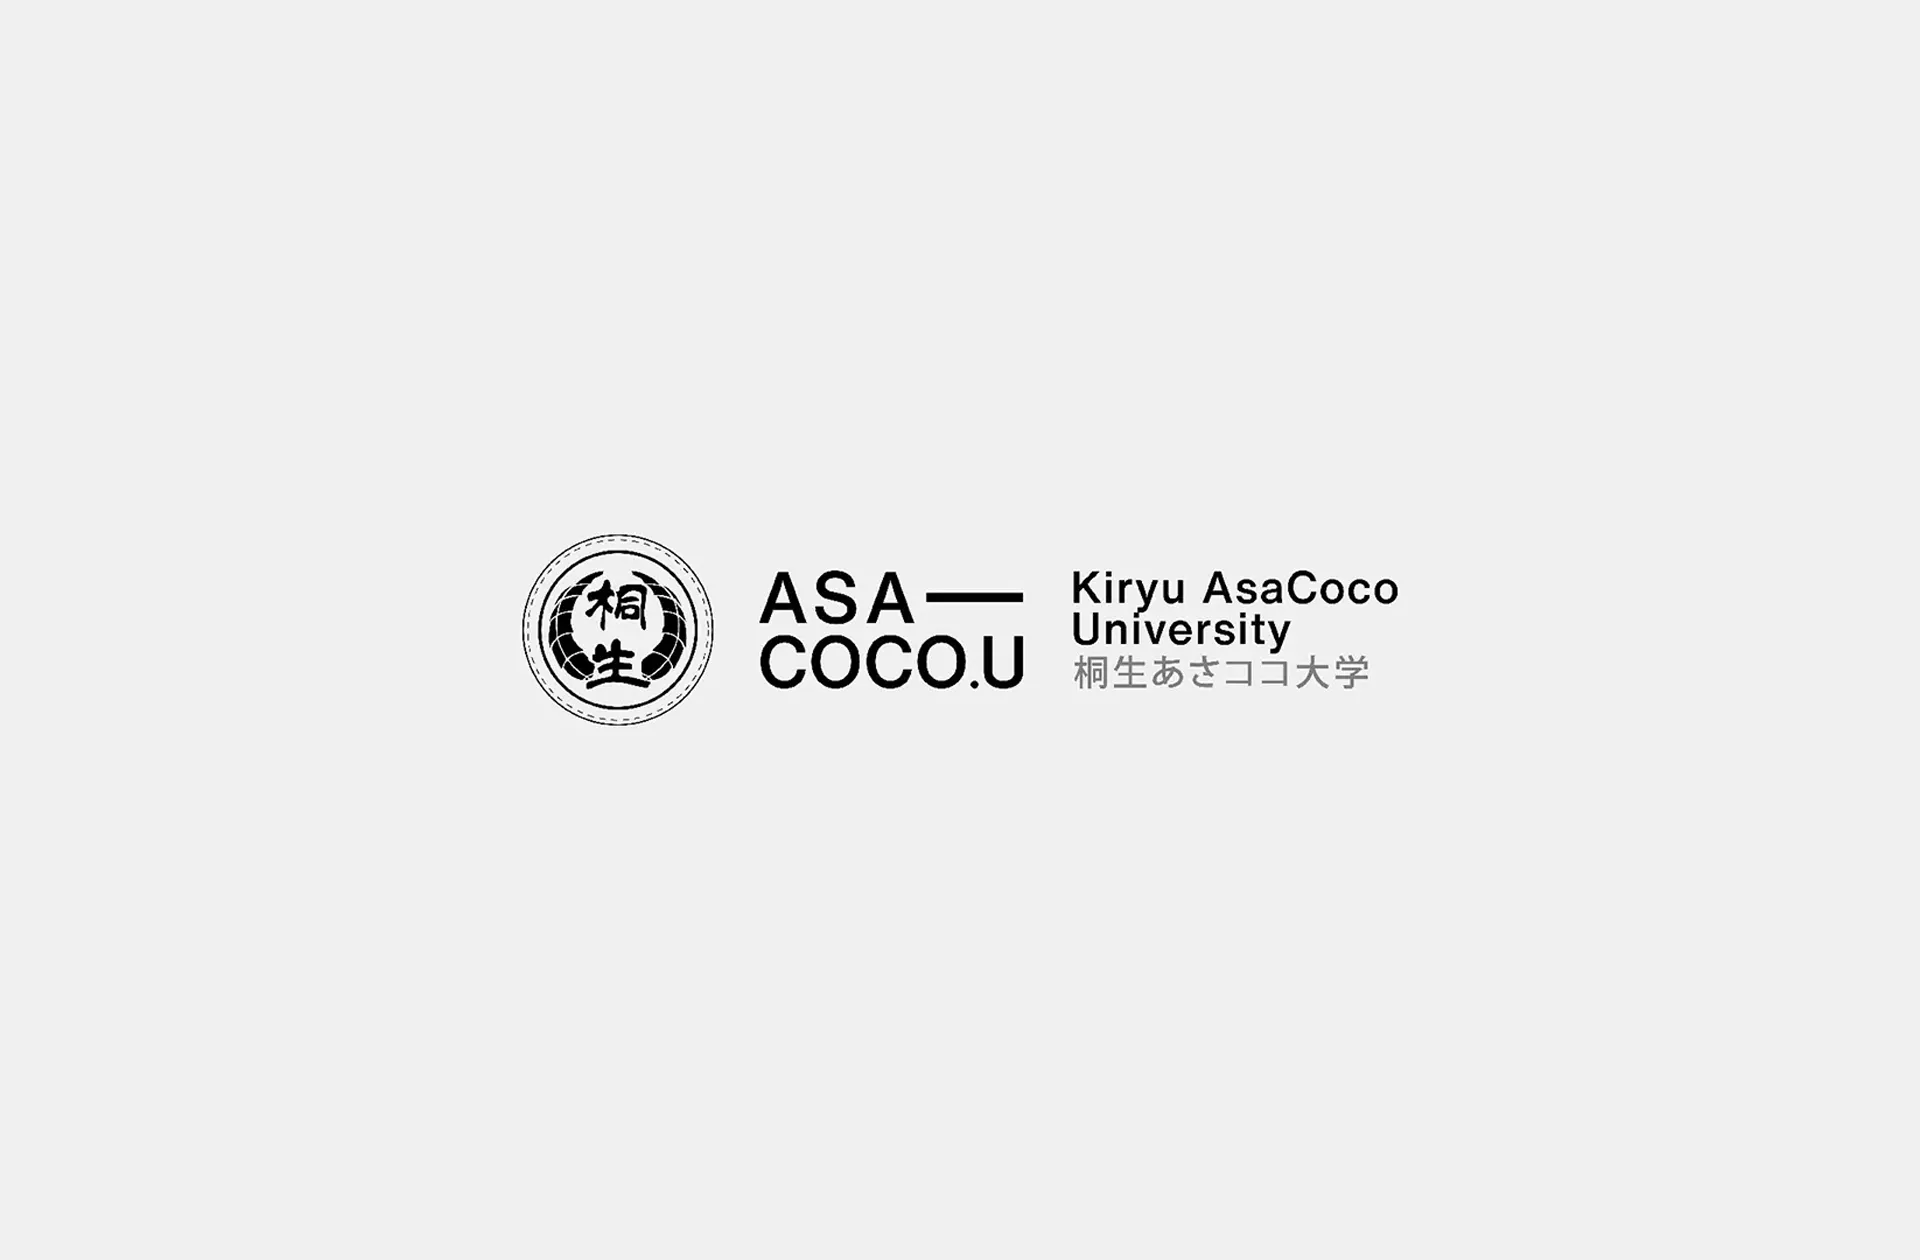 AsacocoU-Branding-v1.3-01_2560x_1920x